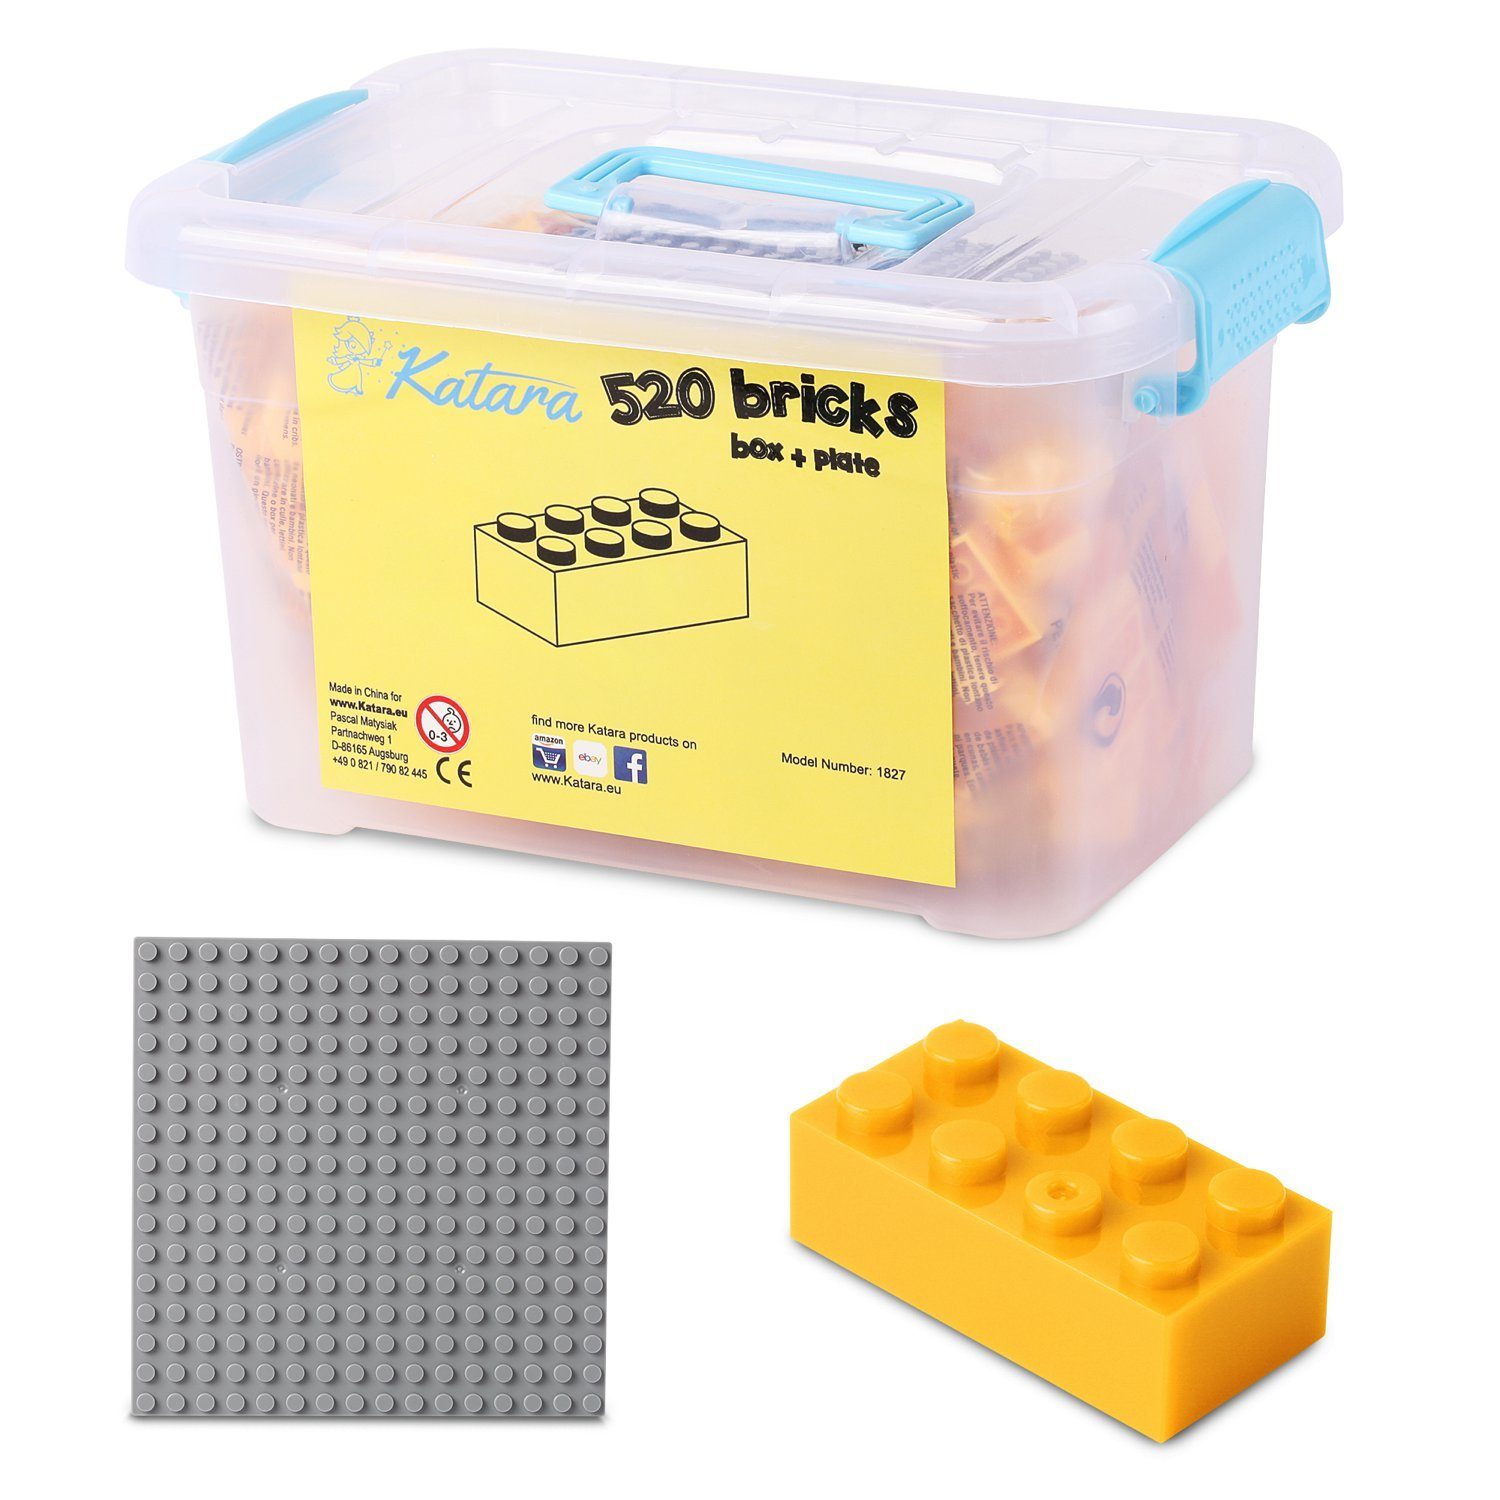 Katara Konstruktionsspielsteine Bausteine Box-Set mit 520 Steinen + Platte + Box, (3er Set), Kompatibel zu allen Anderen Herstellern - verschiedene Farben gelb